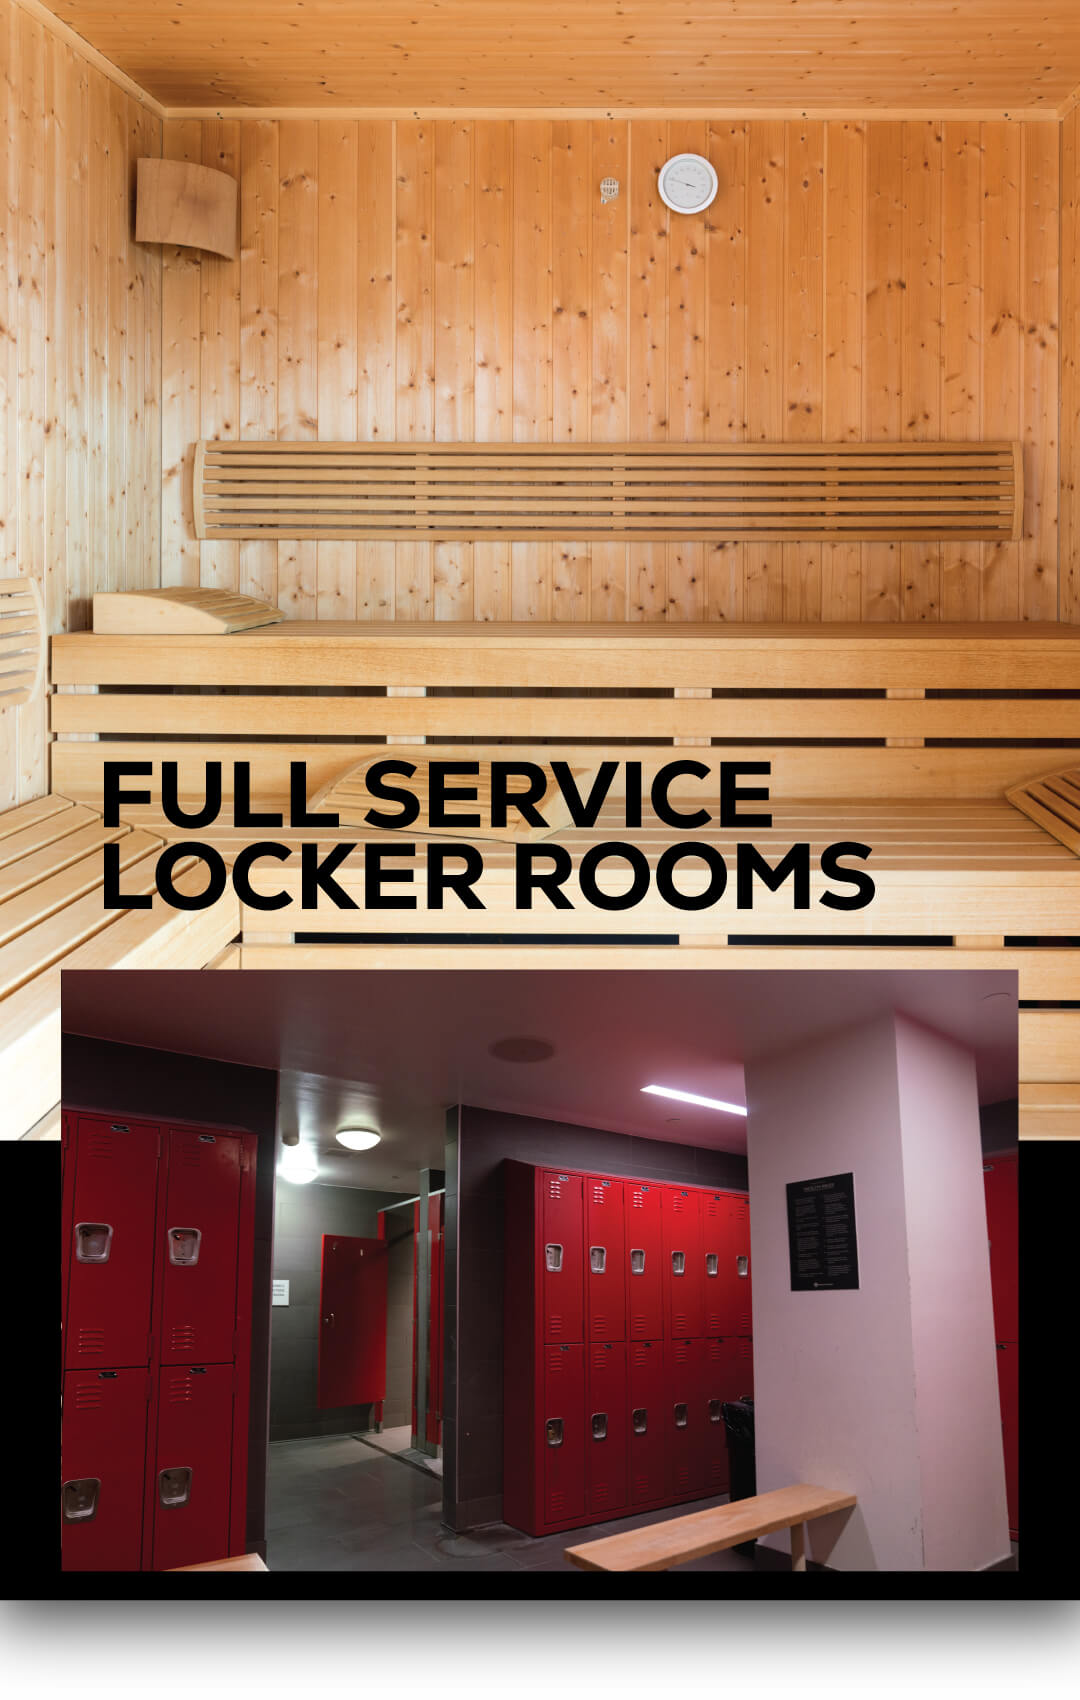 Full service locker rooms